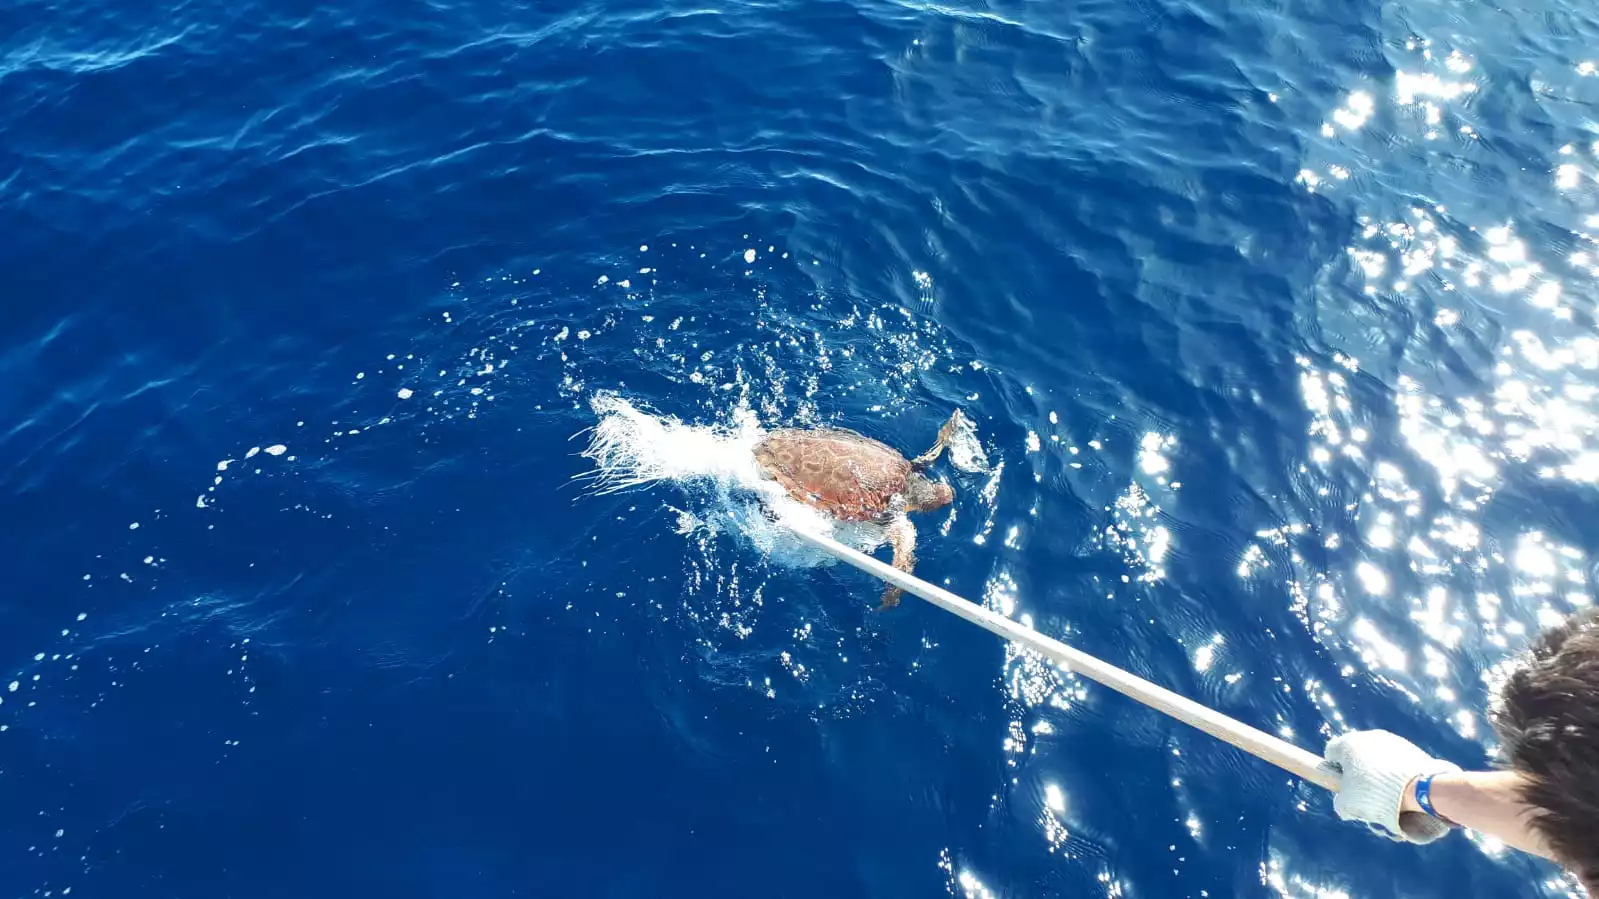 Beim Segeltörn wird eine Meeresschildkröte mit einem Schlauch von der tiefblauen Meeresoberfläche abgespült, wobei das Sonnenlicht einen glitzernden Effekt auf dem Wasser erzeugt.